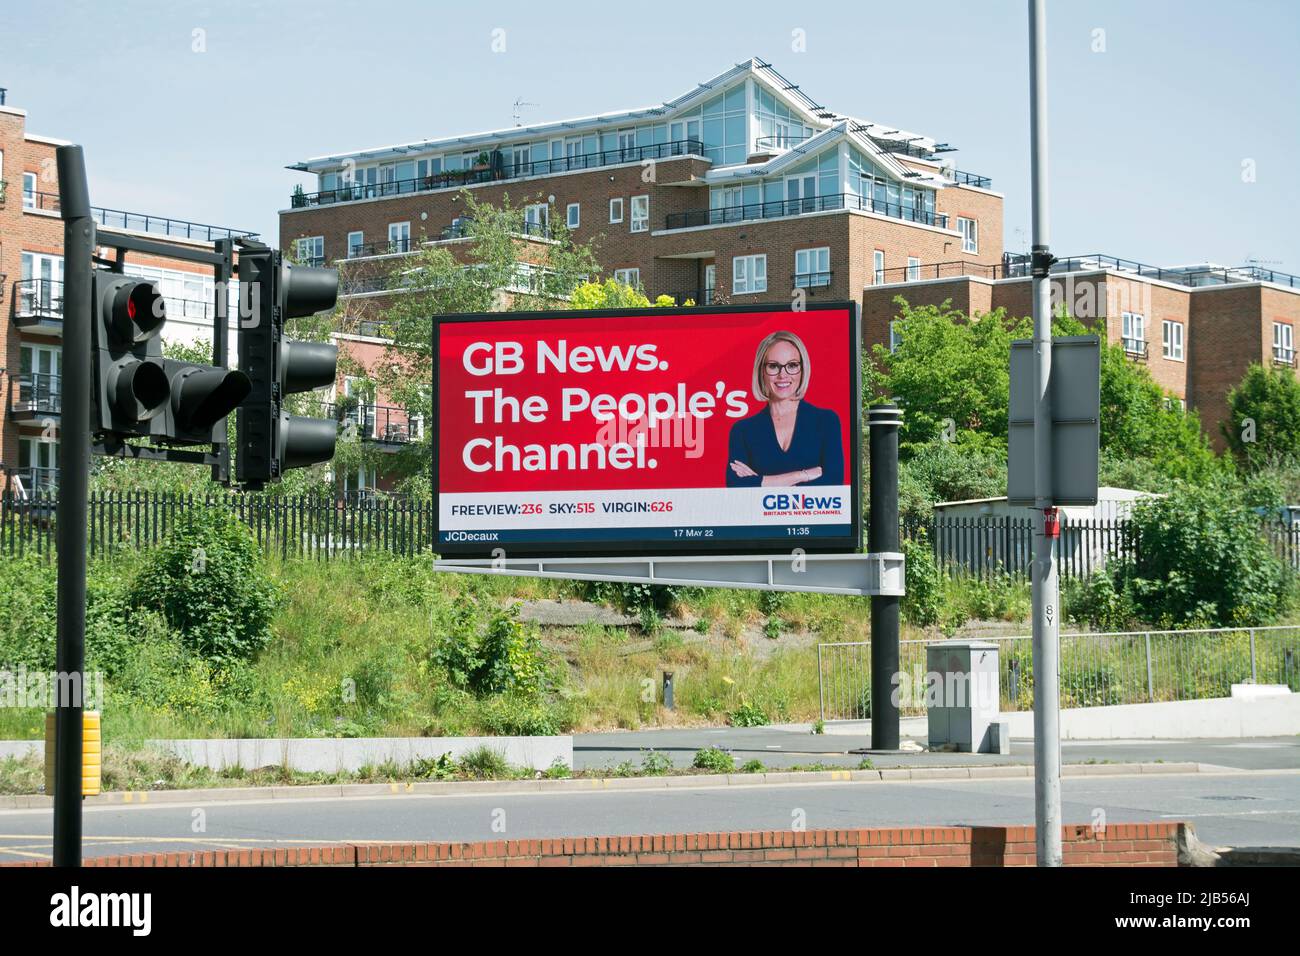 annuncio digitale per il canale televisivo britannico gb news, auto-progettato come canale del popolo, a kingston upon thames, surrey, inghilterra Foto Stock